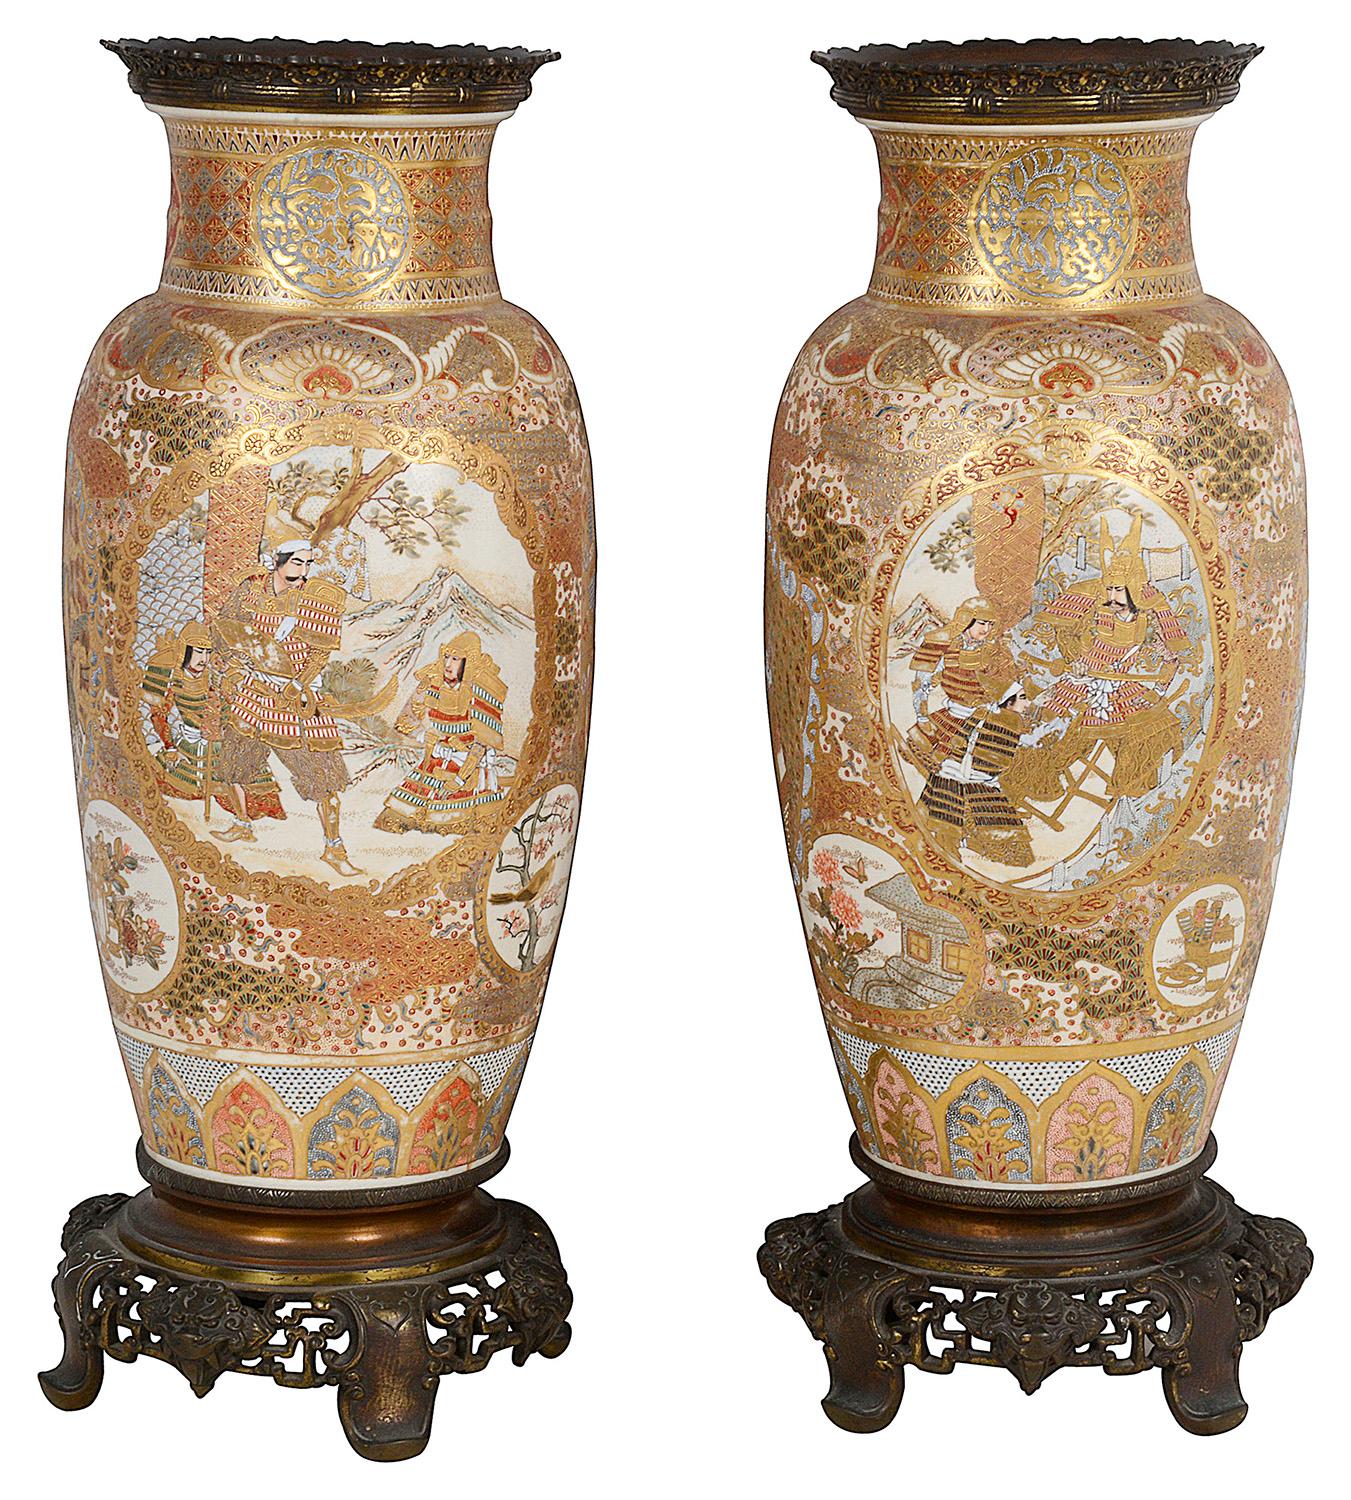 Ein sehr gutes Paar japanischer Vasen/Lampen aus Satsuma-Porzellan aus der Meiji-Zeit (1868-1912). 
Jede mit wunderschönem vergoldetem klassischem Motivdekor, mit eingelassenen handgemalten Tafeln, die verschiedene Szenen von anwesenden Höflingen